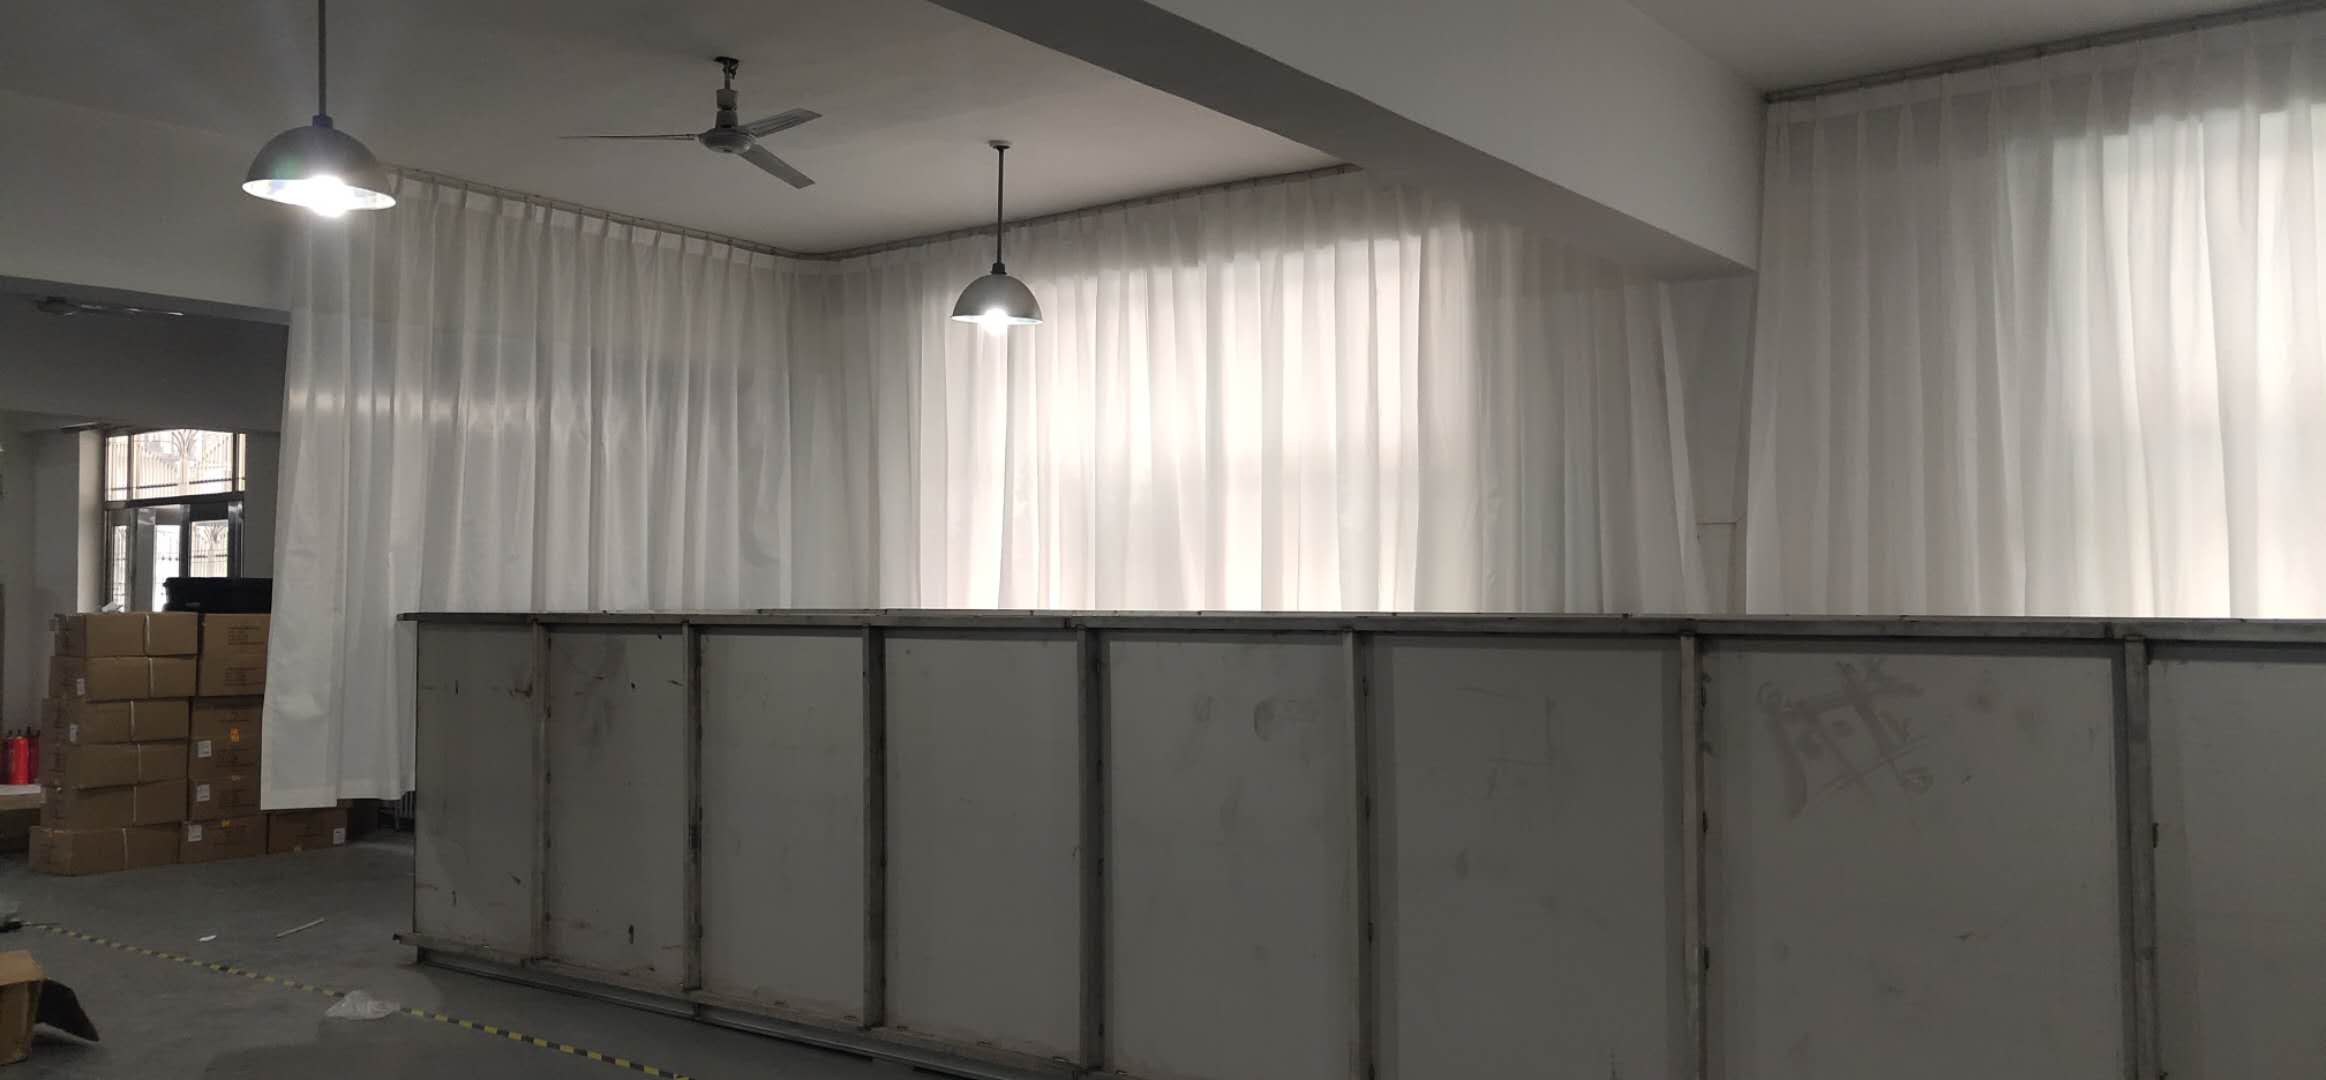 北京敬业北低自动化设备公司库房窗帘安装